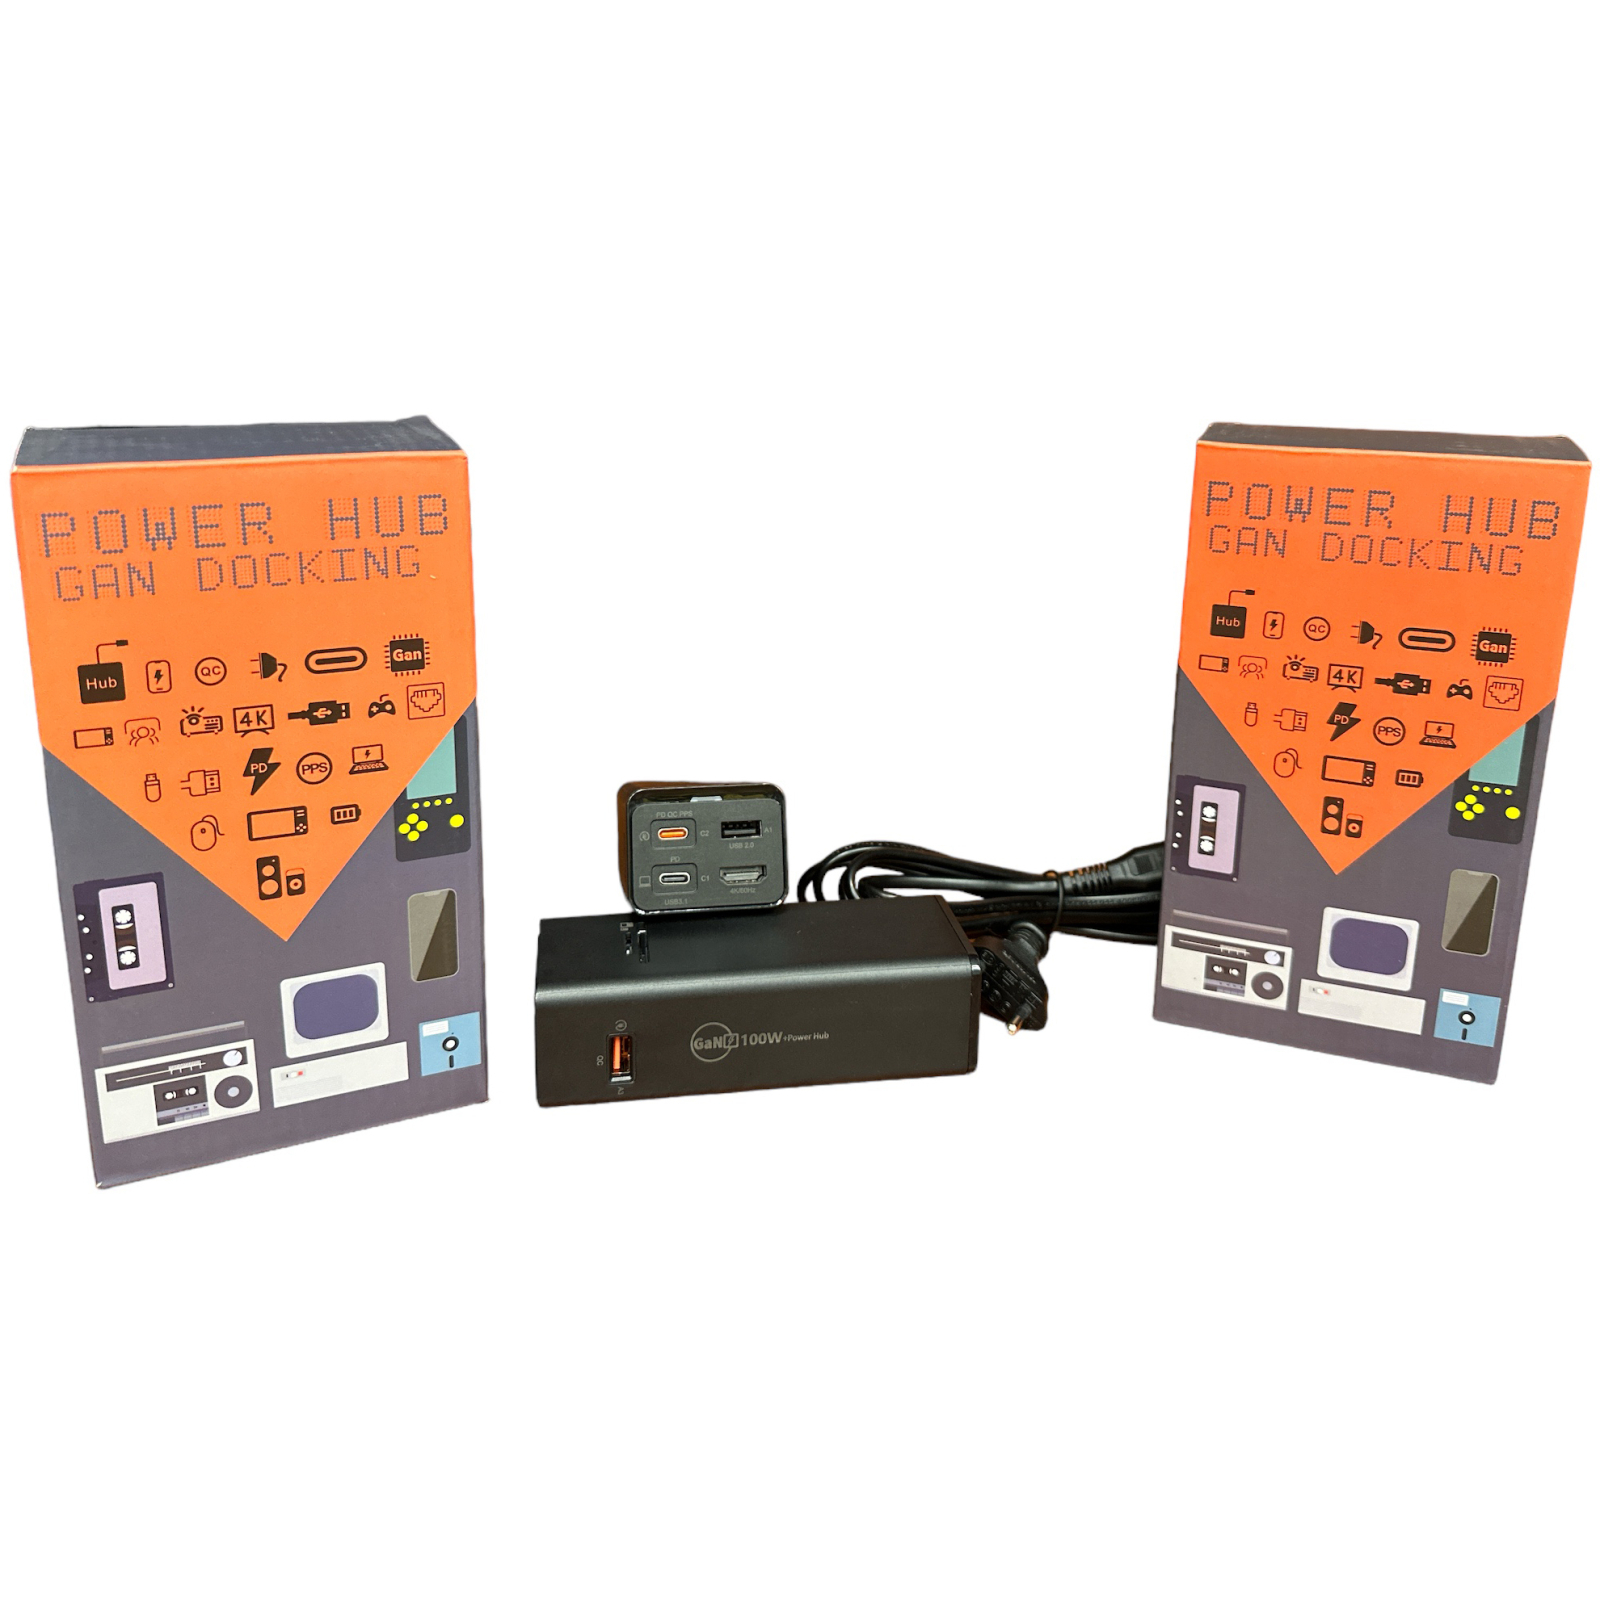 Зарядное устройство XoKo Power Hub QC-700 7 в 1 GAN 100W, PD, QC, USDB 3.1, HDMI, micro SD reader (CD00608) (XK-QC-700) изображение 2